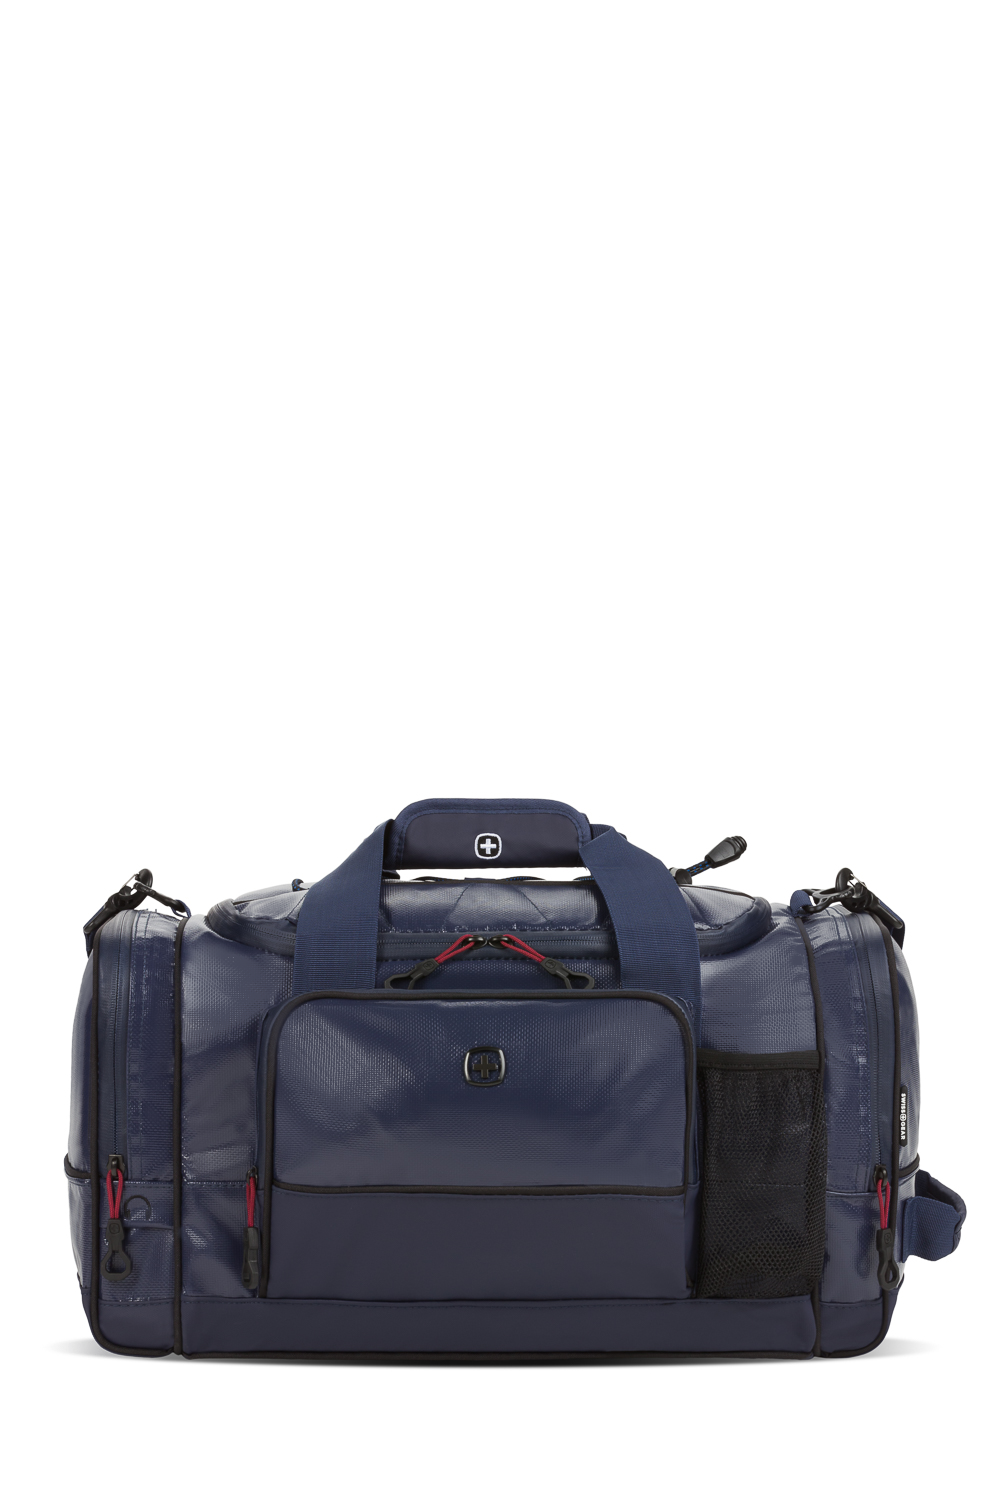 SwissGear 9000 20" Apex Duffel Bag